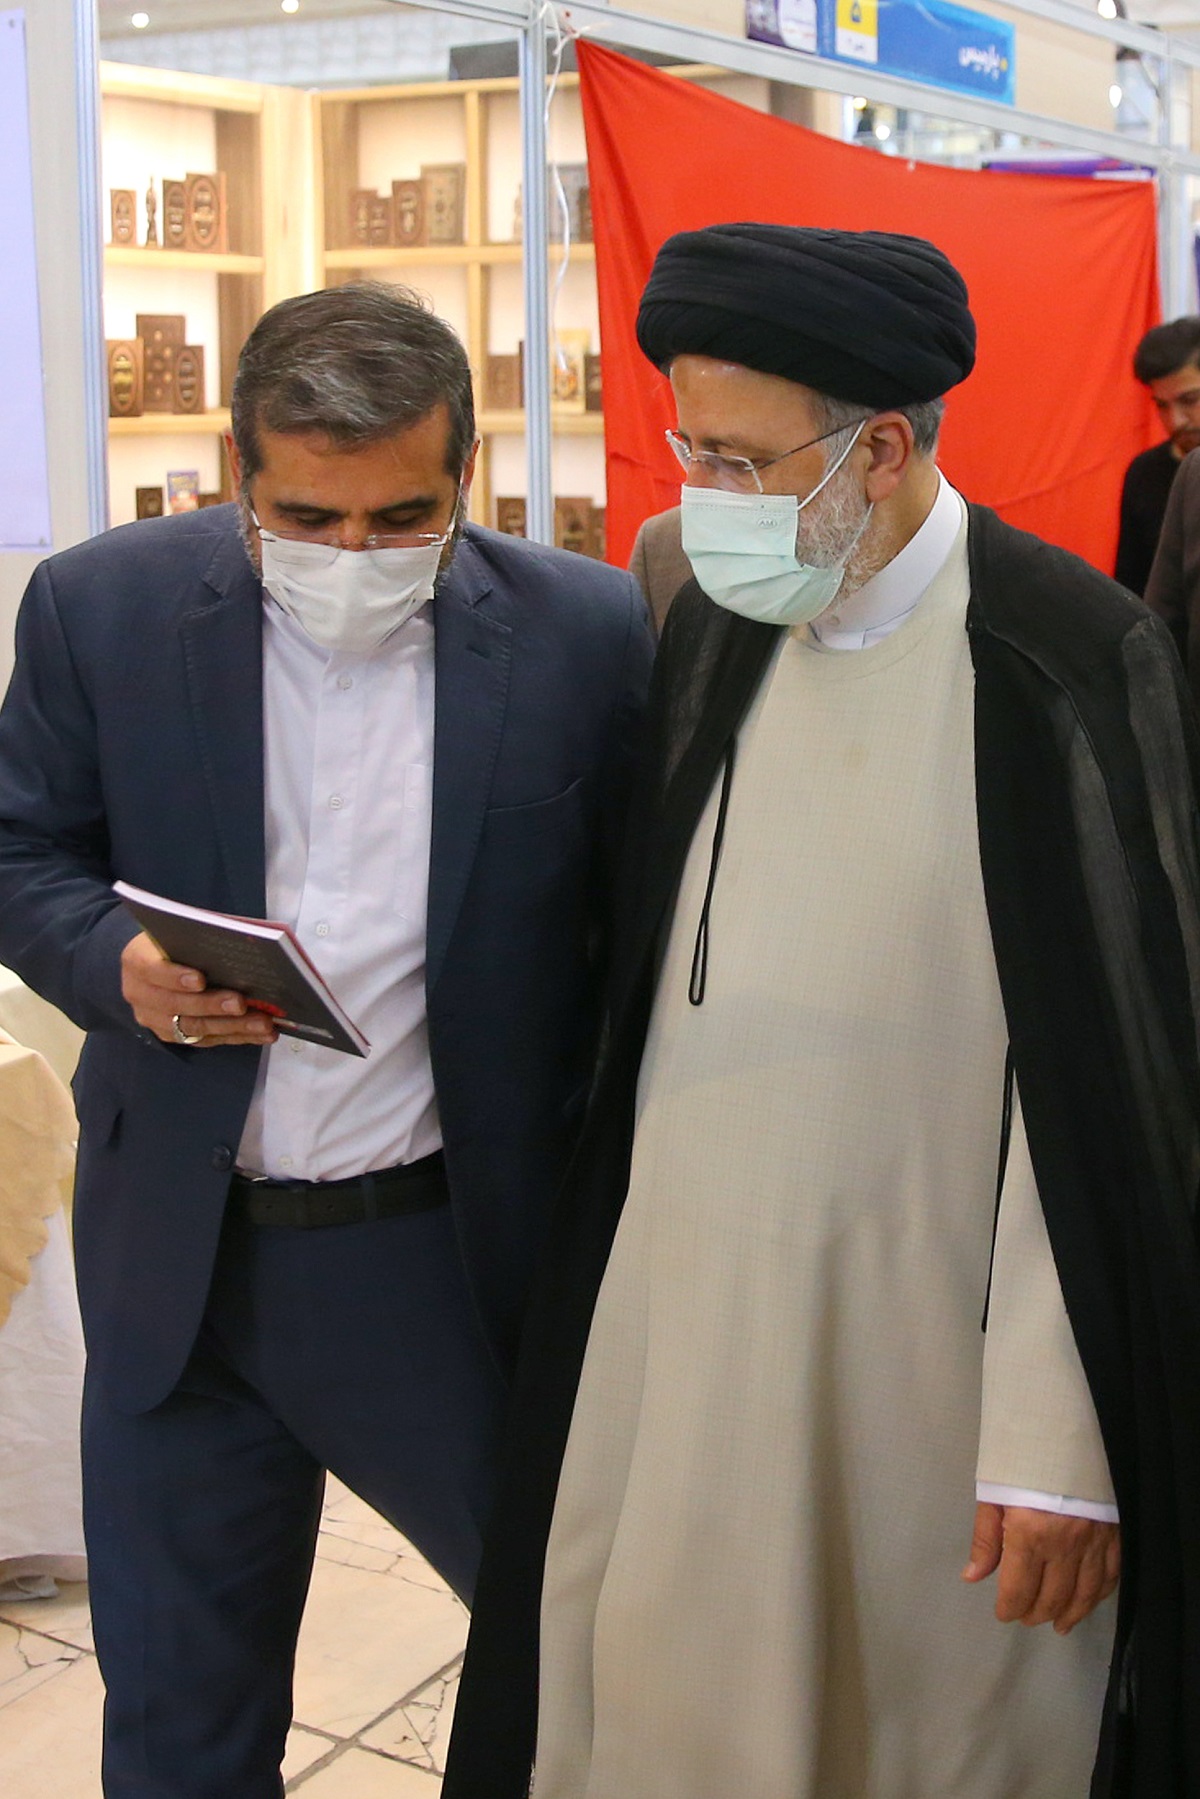 بازدید رئیس جمهور از نمایشگاه بین المللی کتاب تهران